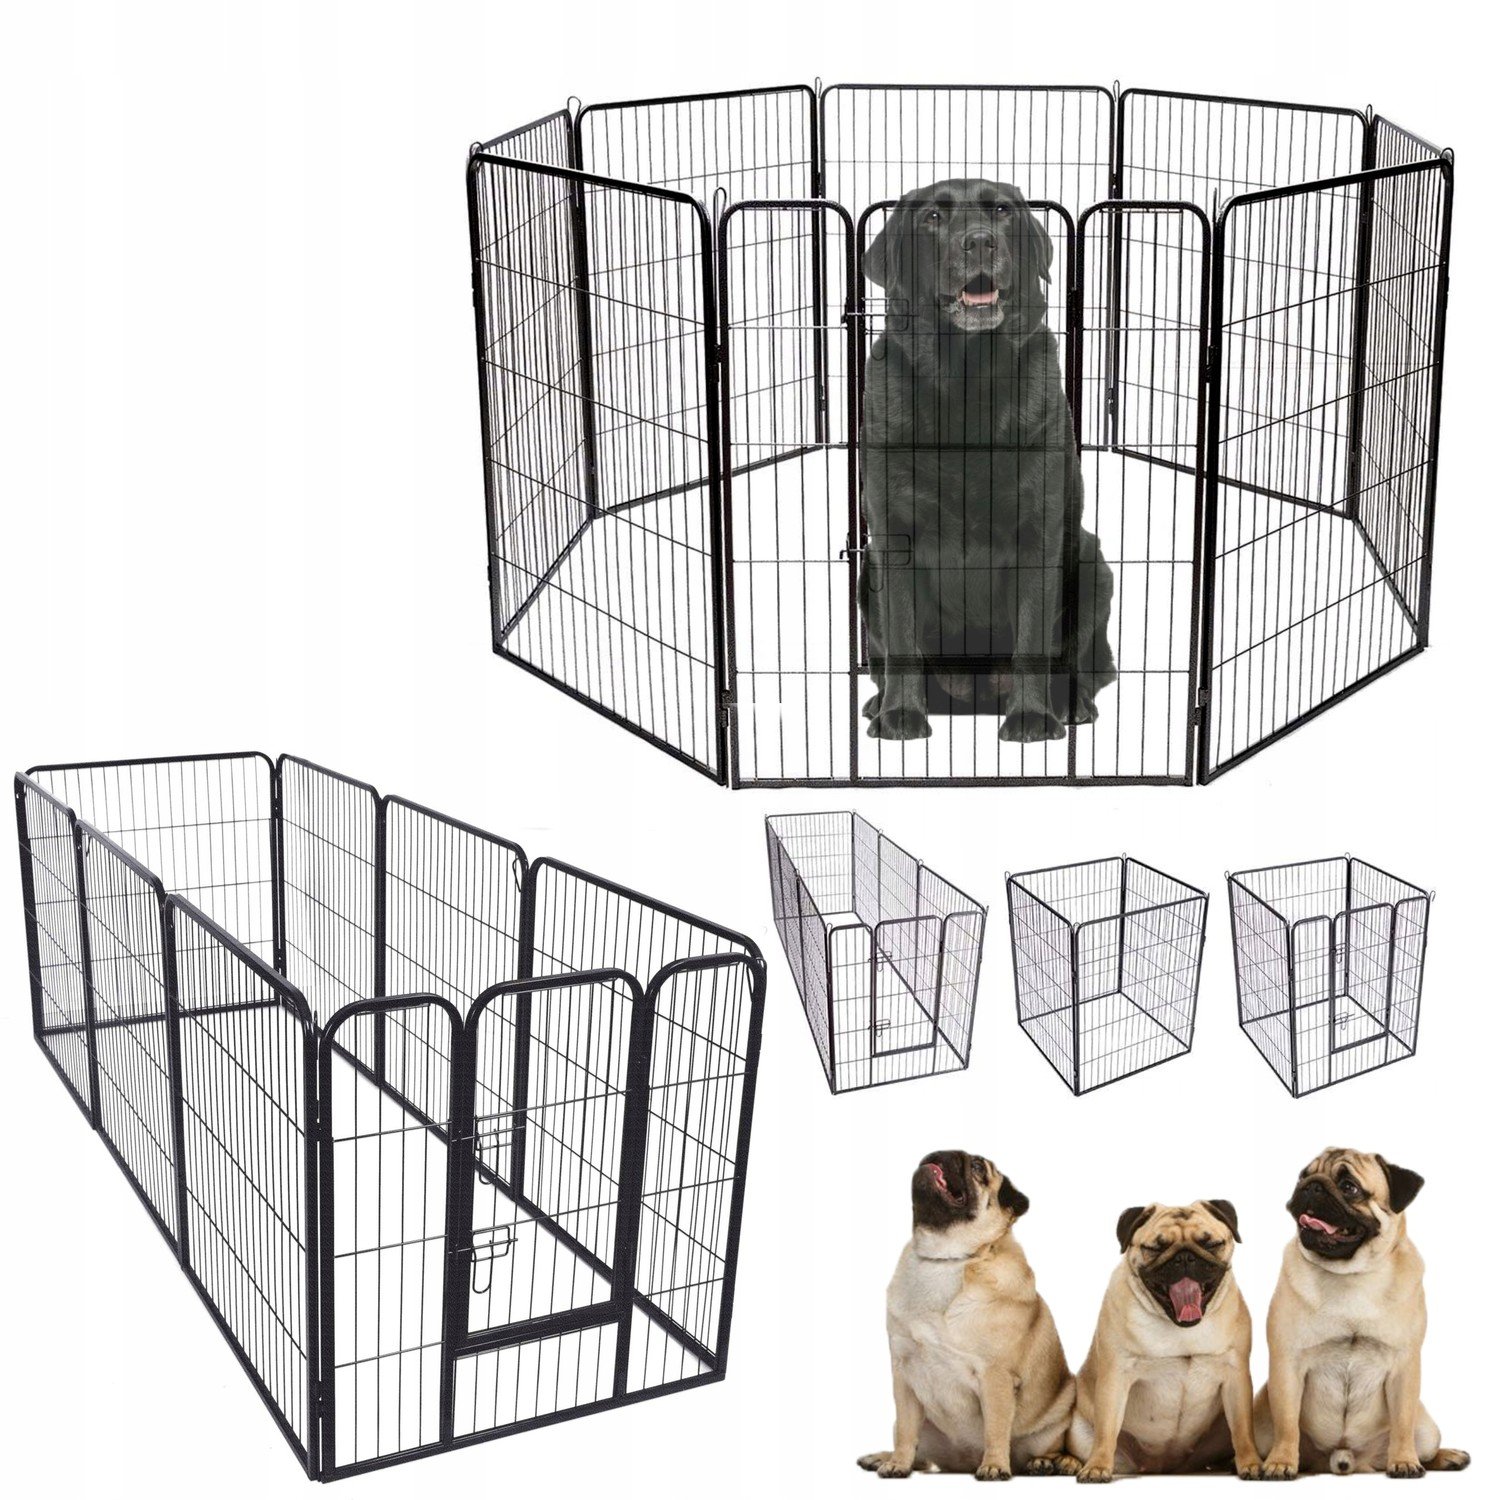 Ohrádka kovová klec plot pro zvířata velkých psů skládací